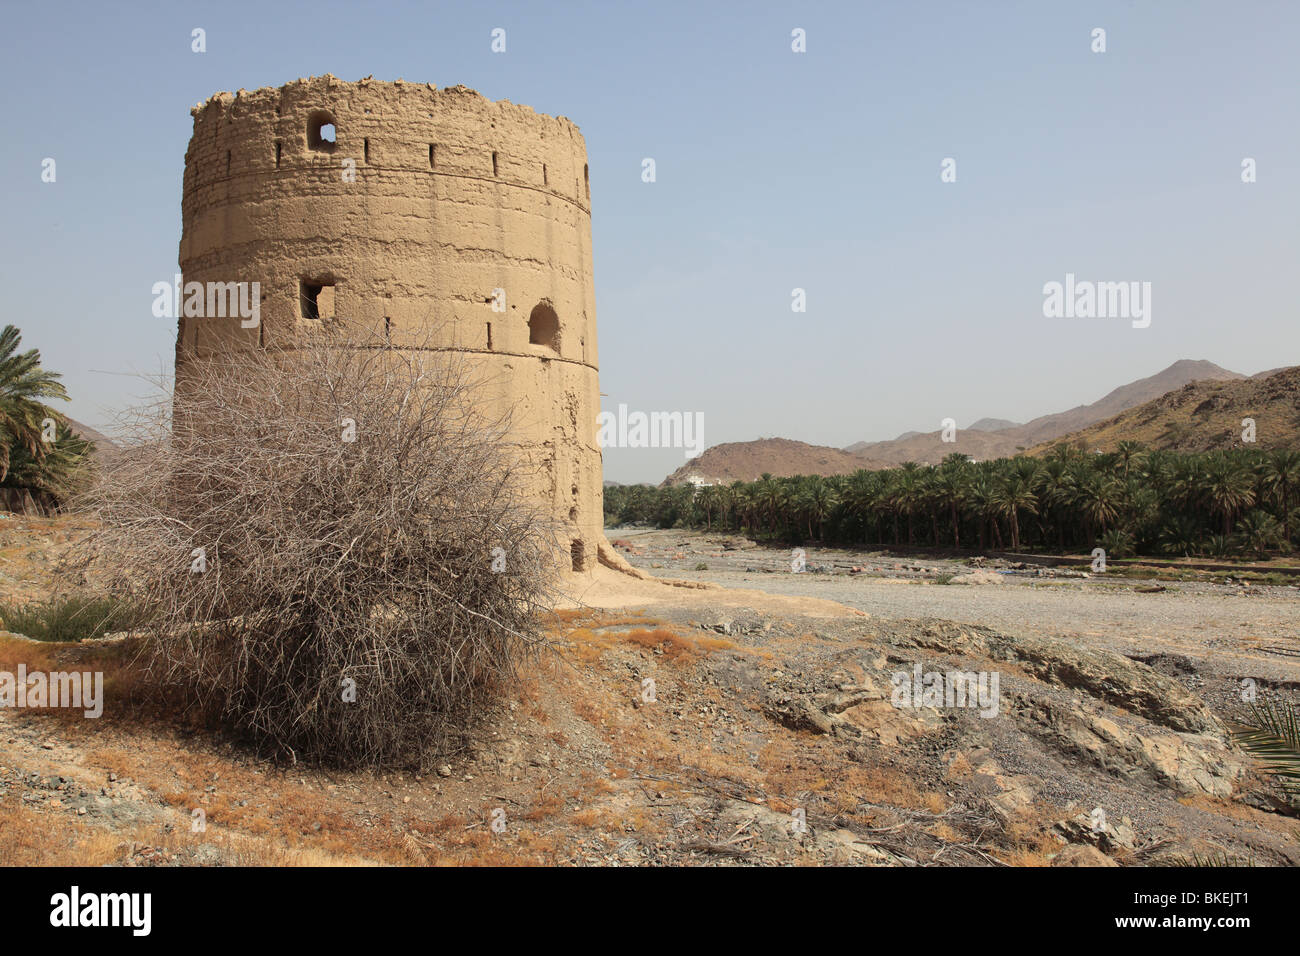 traditionellen alten Wachturm im Wadi alte Fanja, Hajar al Gharbi, Sultanat von Oman. Foto: Willy Matheisl Stockfoto